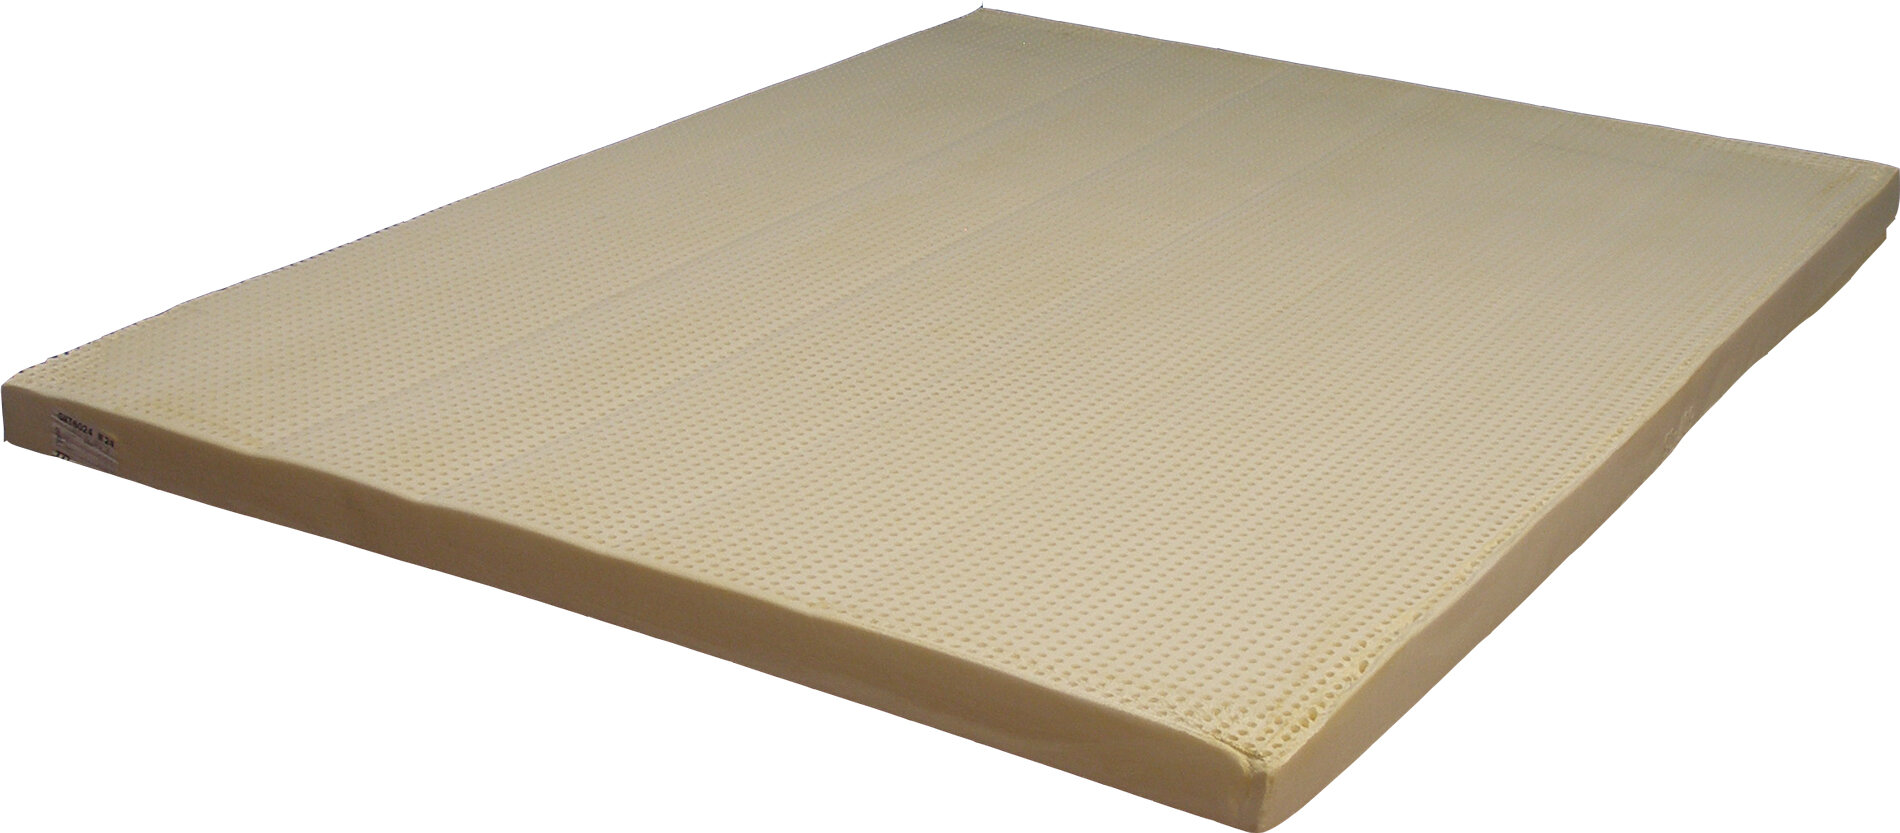 latex foam rv mattress